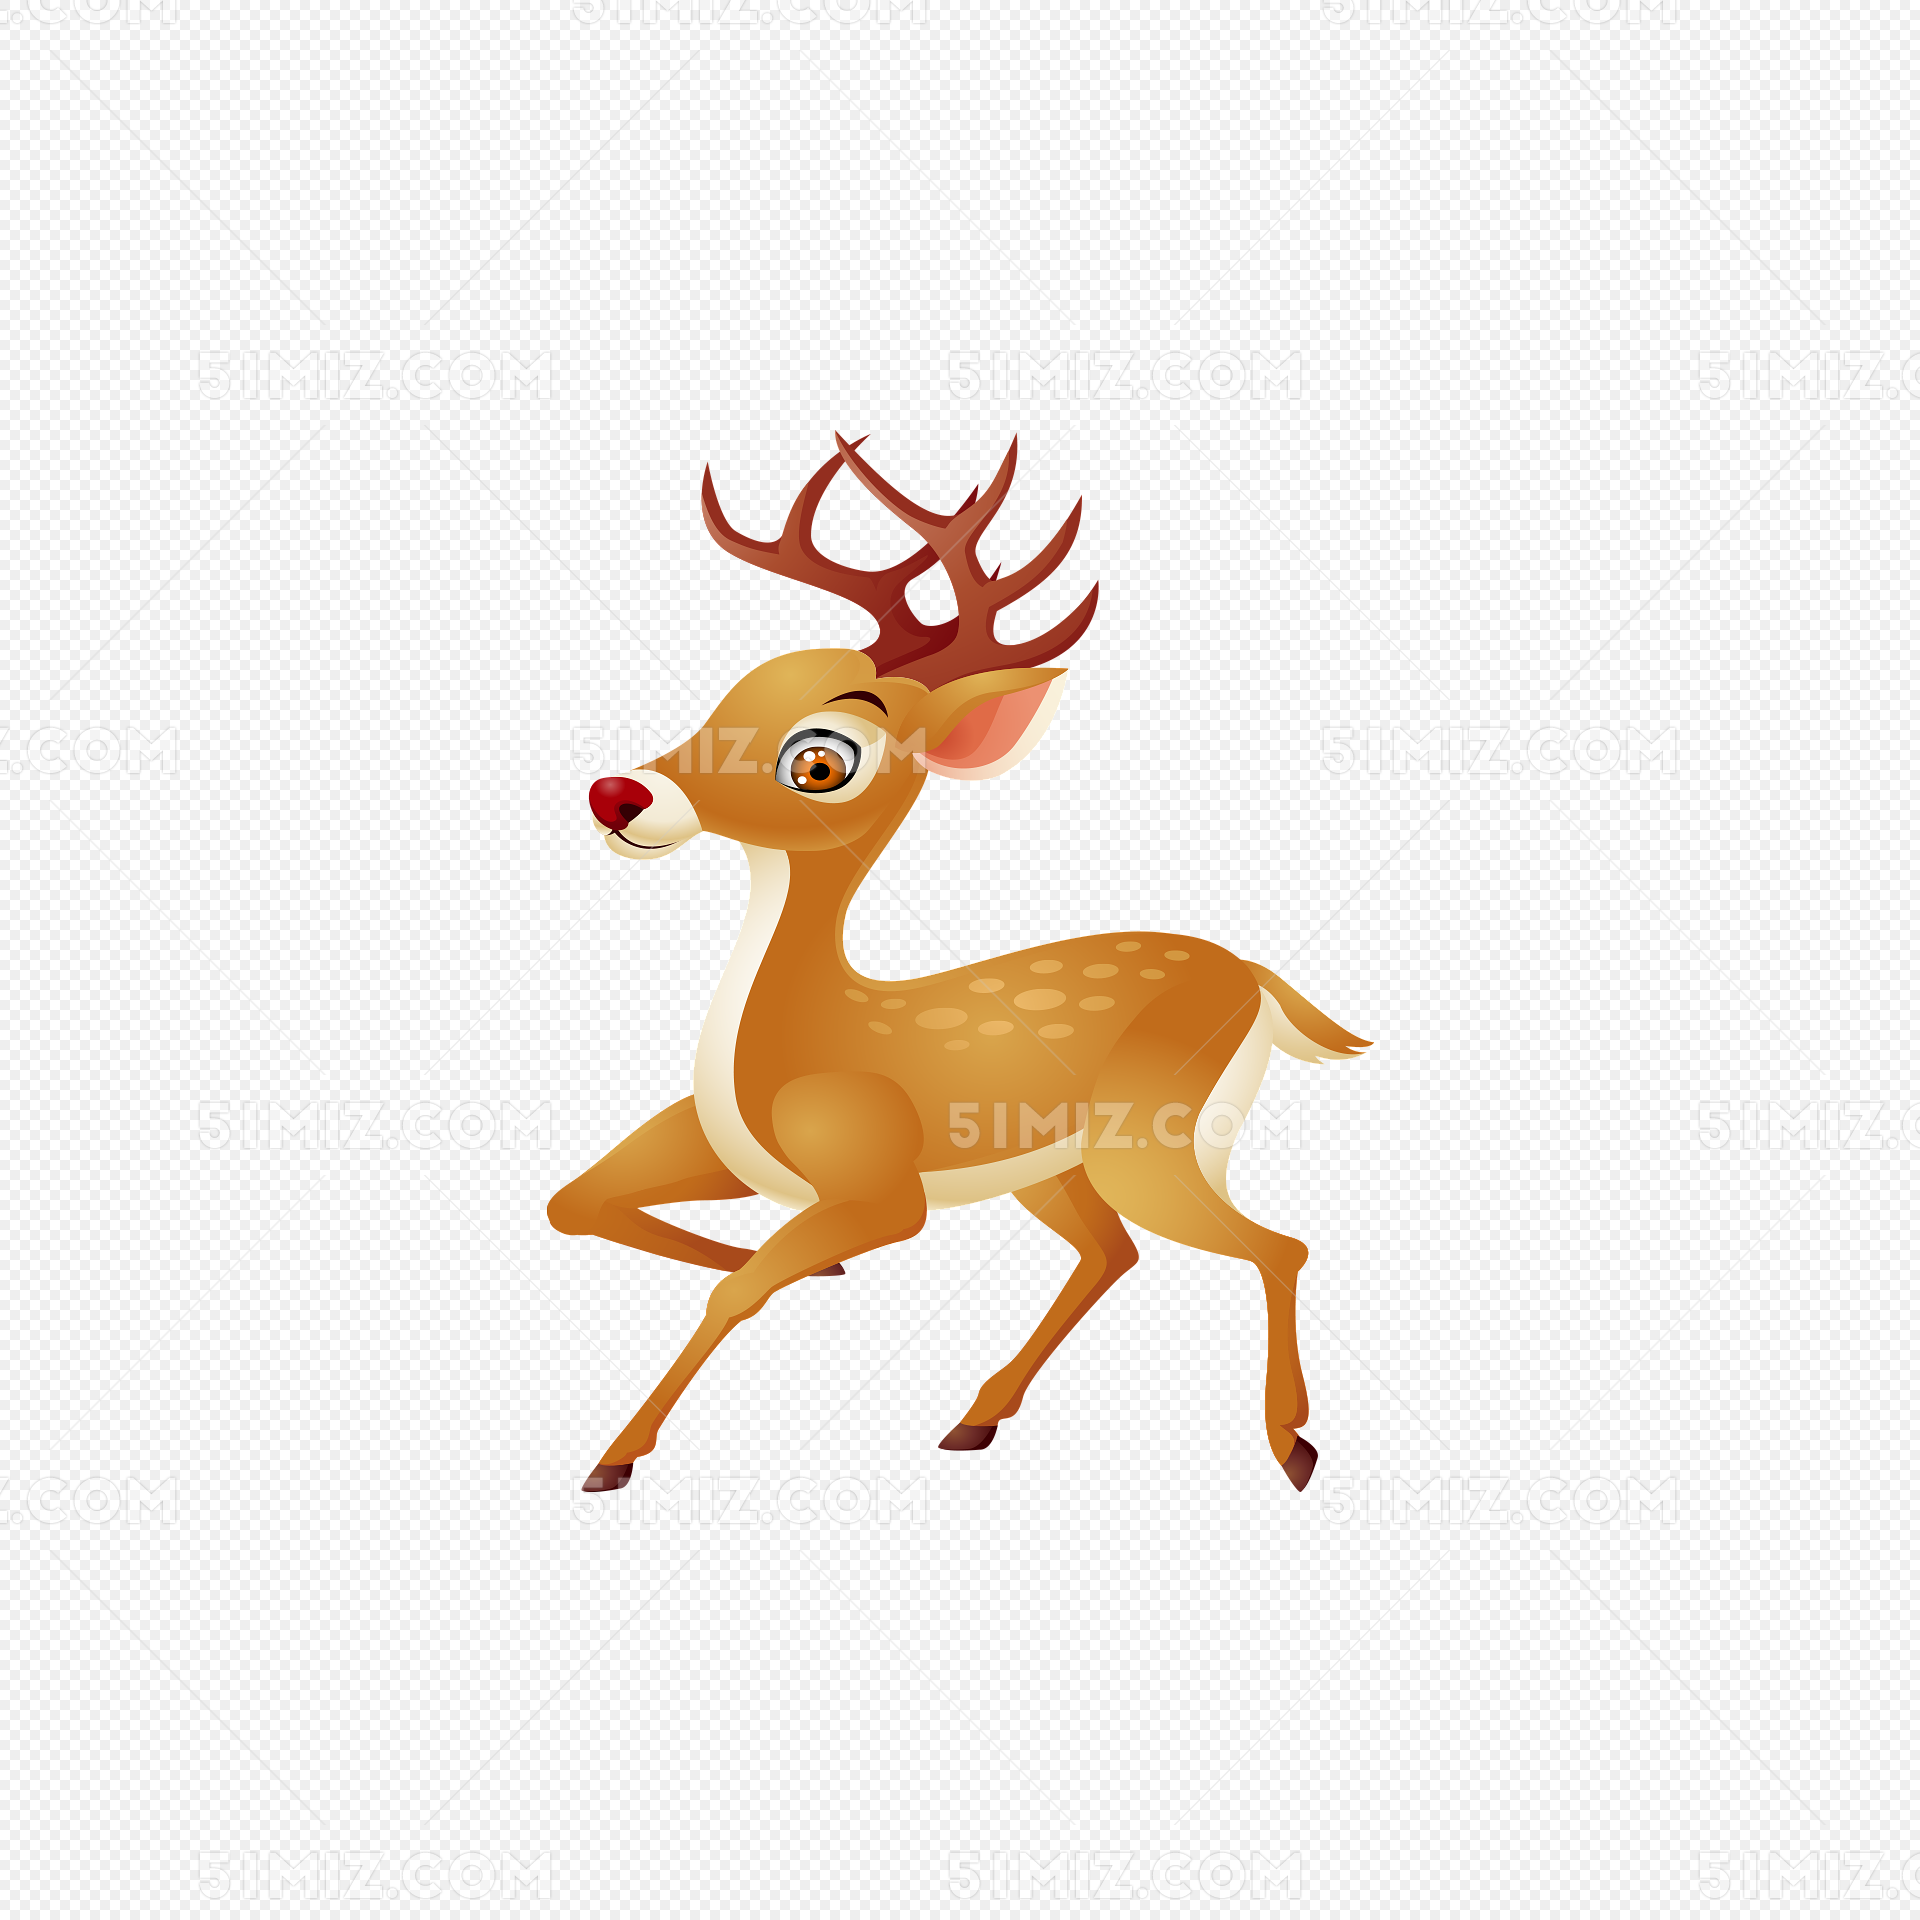 一鹿发财 4K 小鹿(动物静态壁纸) - 静态壁纸下载 - 元气壁纸